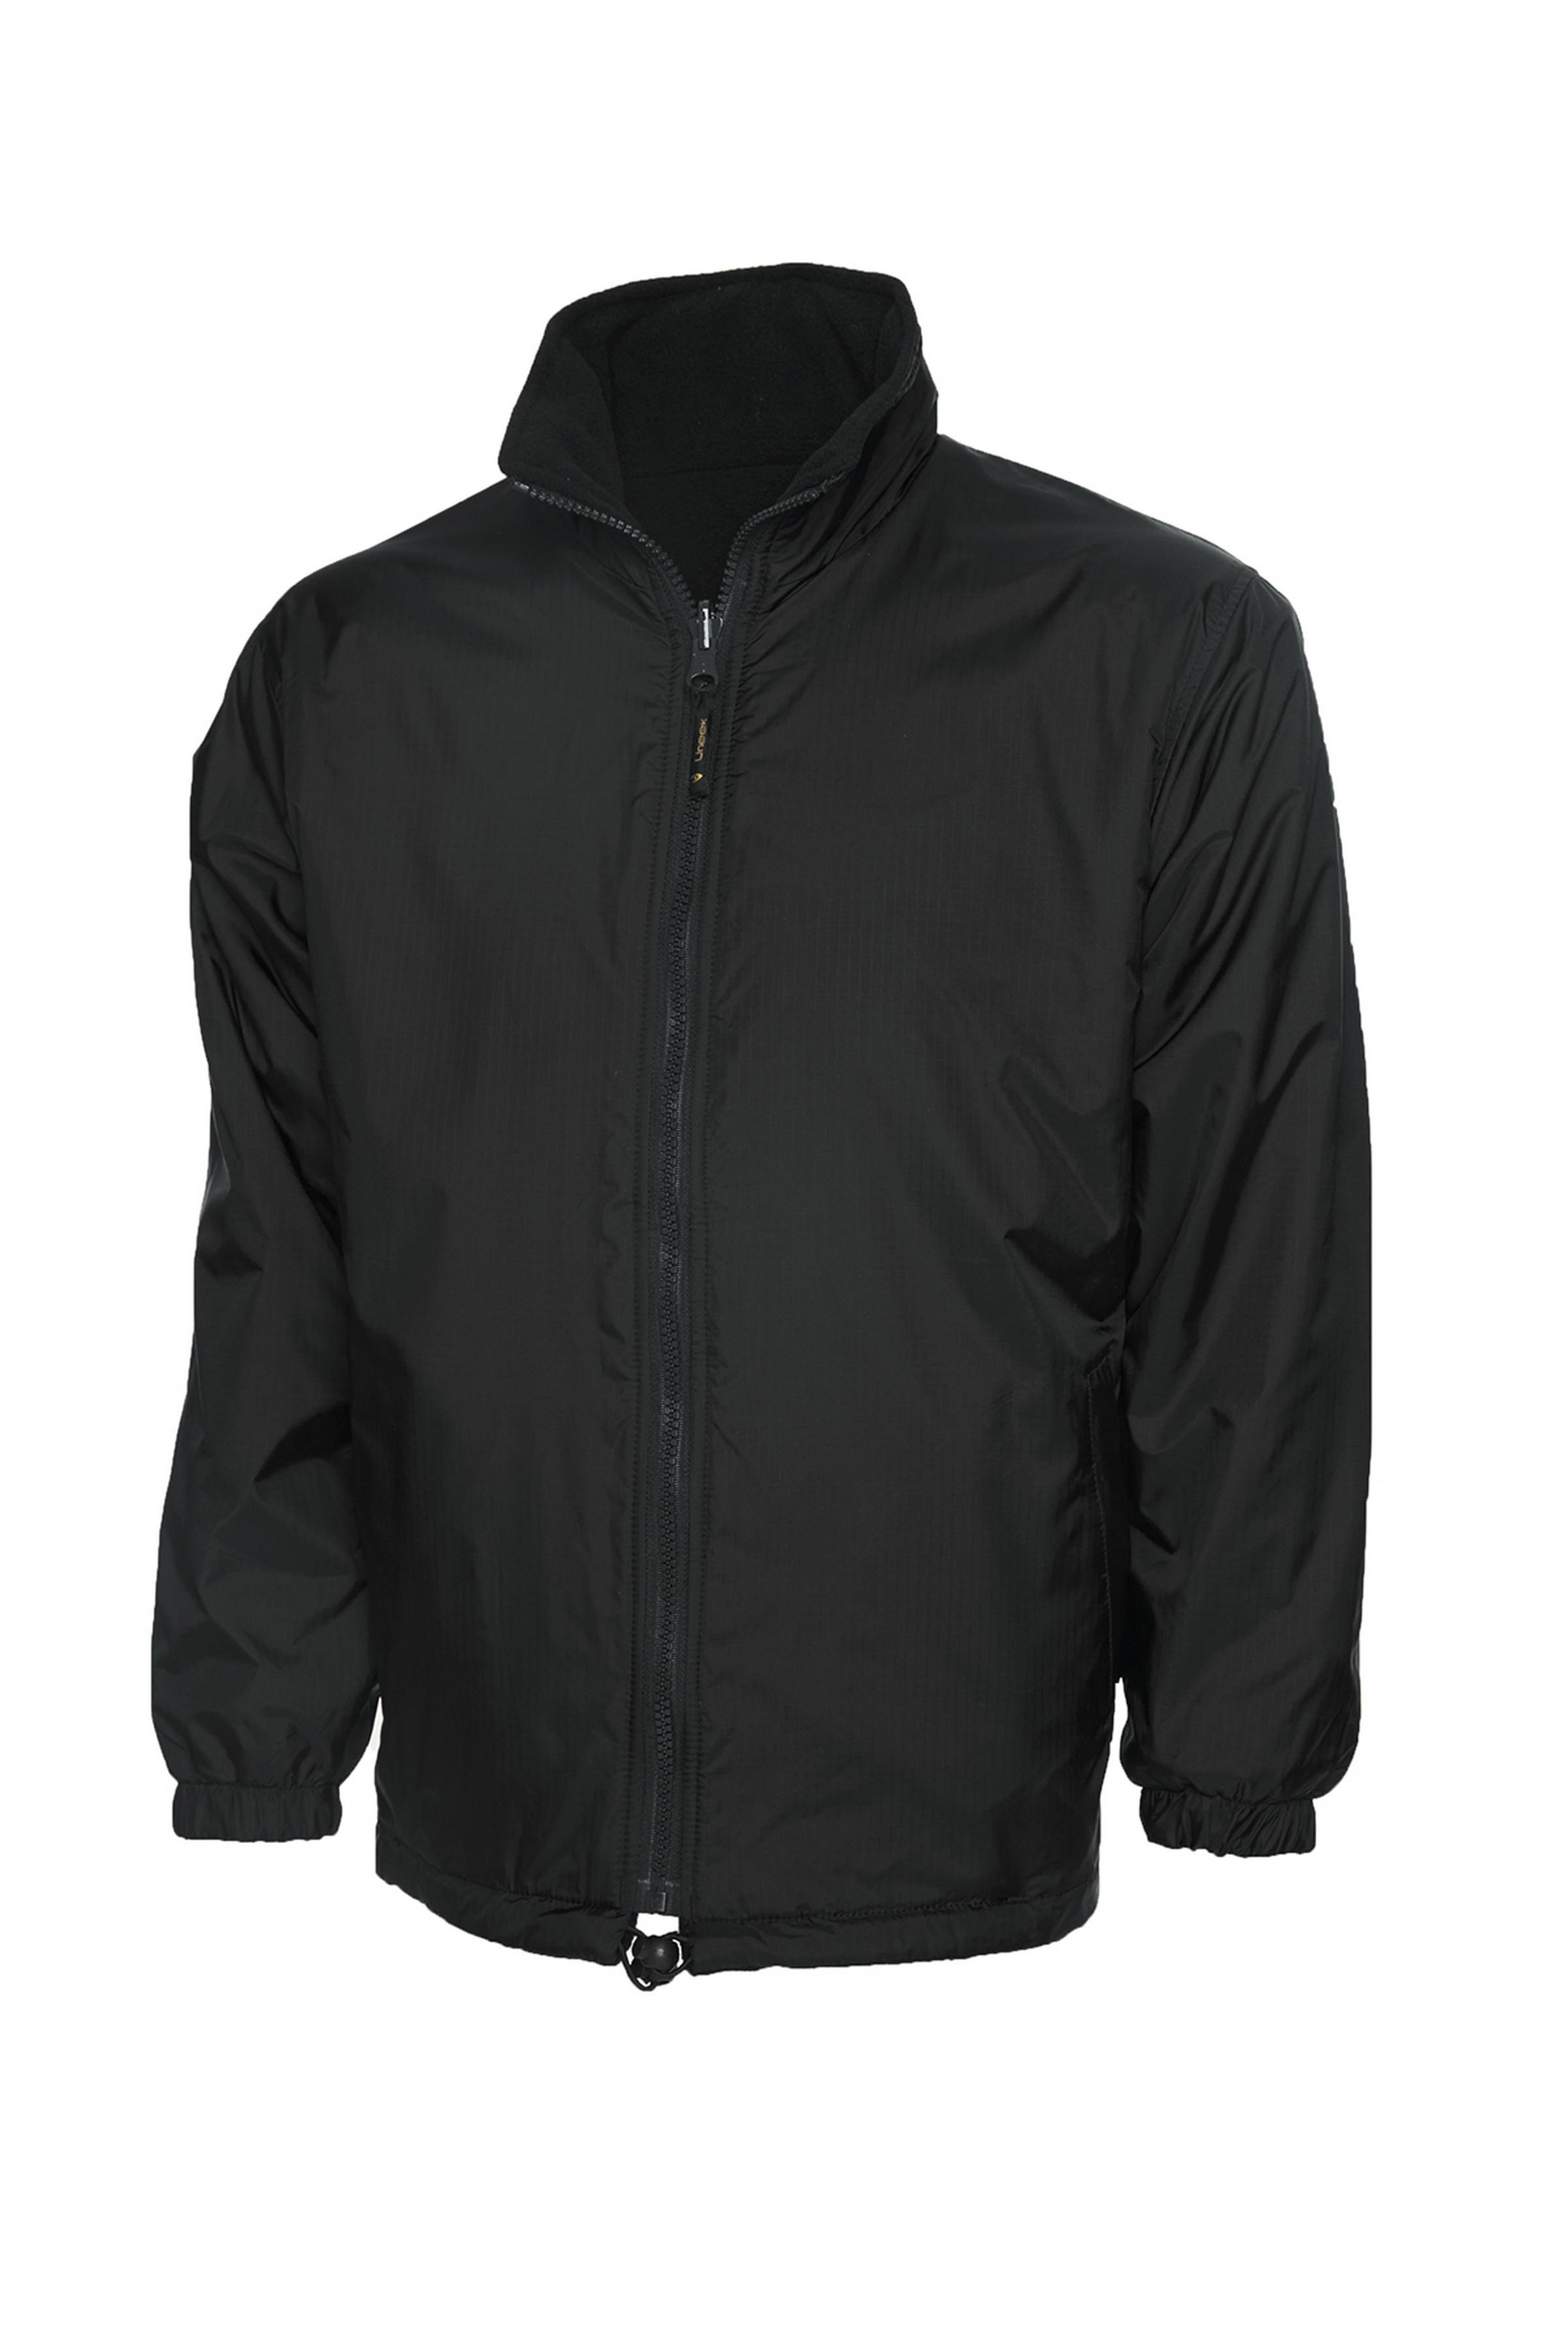 605 Premium Reversible Fleece Jacket